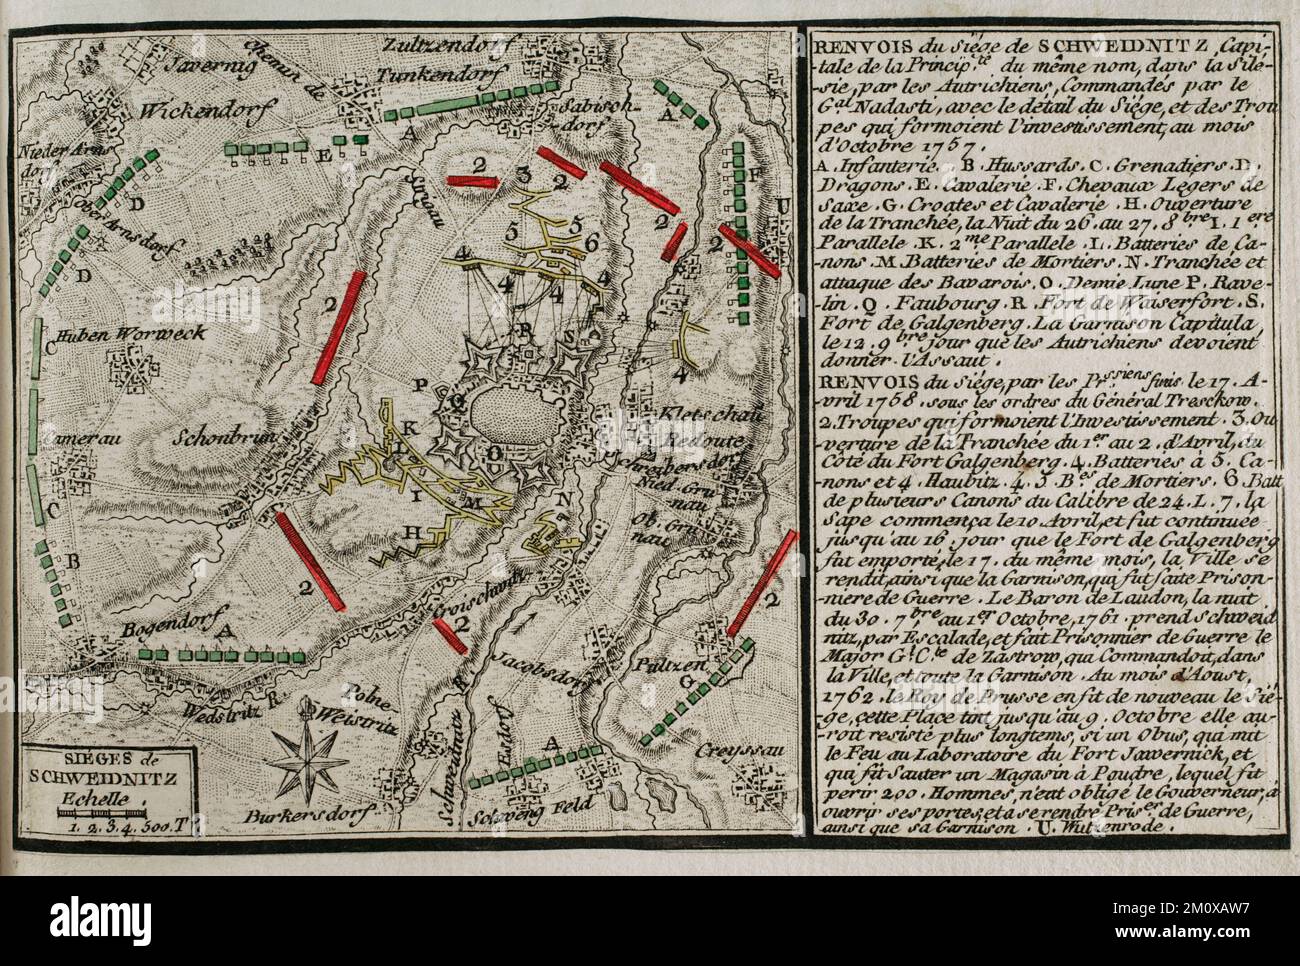 Guerre de sept ans (1756-1763). Troisième guerre de Silésie. Carte du siège de Schweidnitz, 1757. Un corps d'armée autrichien sous le commandement du général Franz Leopold von Nadasdy a entouré Schweidinitz le 14 octobre 1757. Le 15 mars 1758, Frederick le Grand déménage à Breslau. Avant de commencer la nouvelle campagne, il devait contrôler la ville encore détenue par l'Autriche de Schweidnitz. L'ordre de commencer le siège de Schweidnitz a été donné au général von Tresckow. Le 18 avril 1758, la garnison autrichienne de Schweidnitz abandonna la forteresse et posa ses armes. La forteresse était occupée par les Prussiens sous Colone Banque D'Images